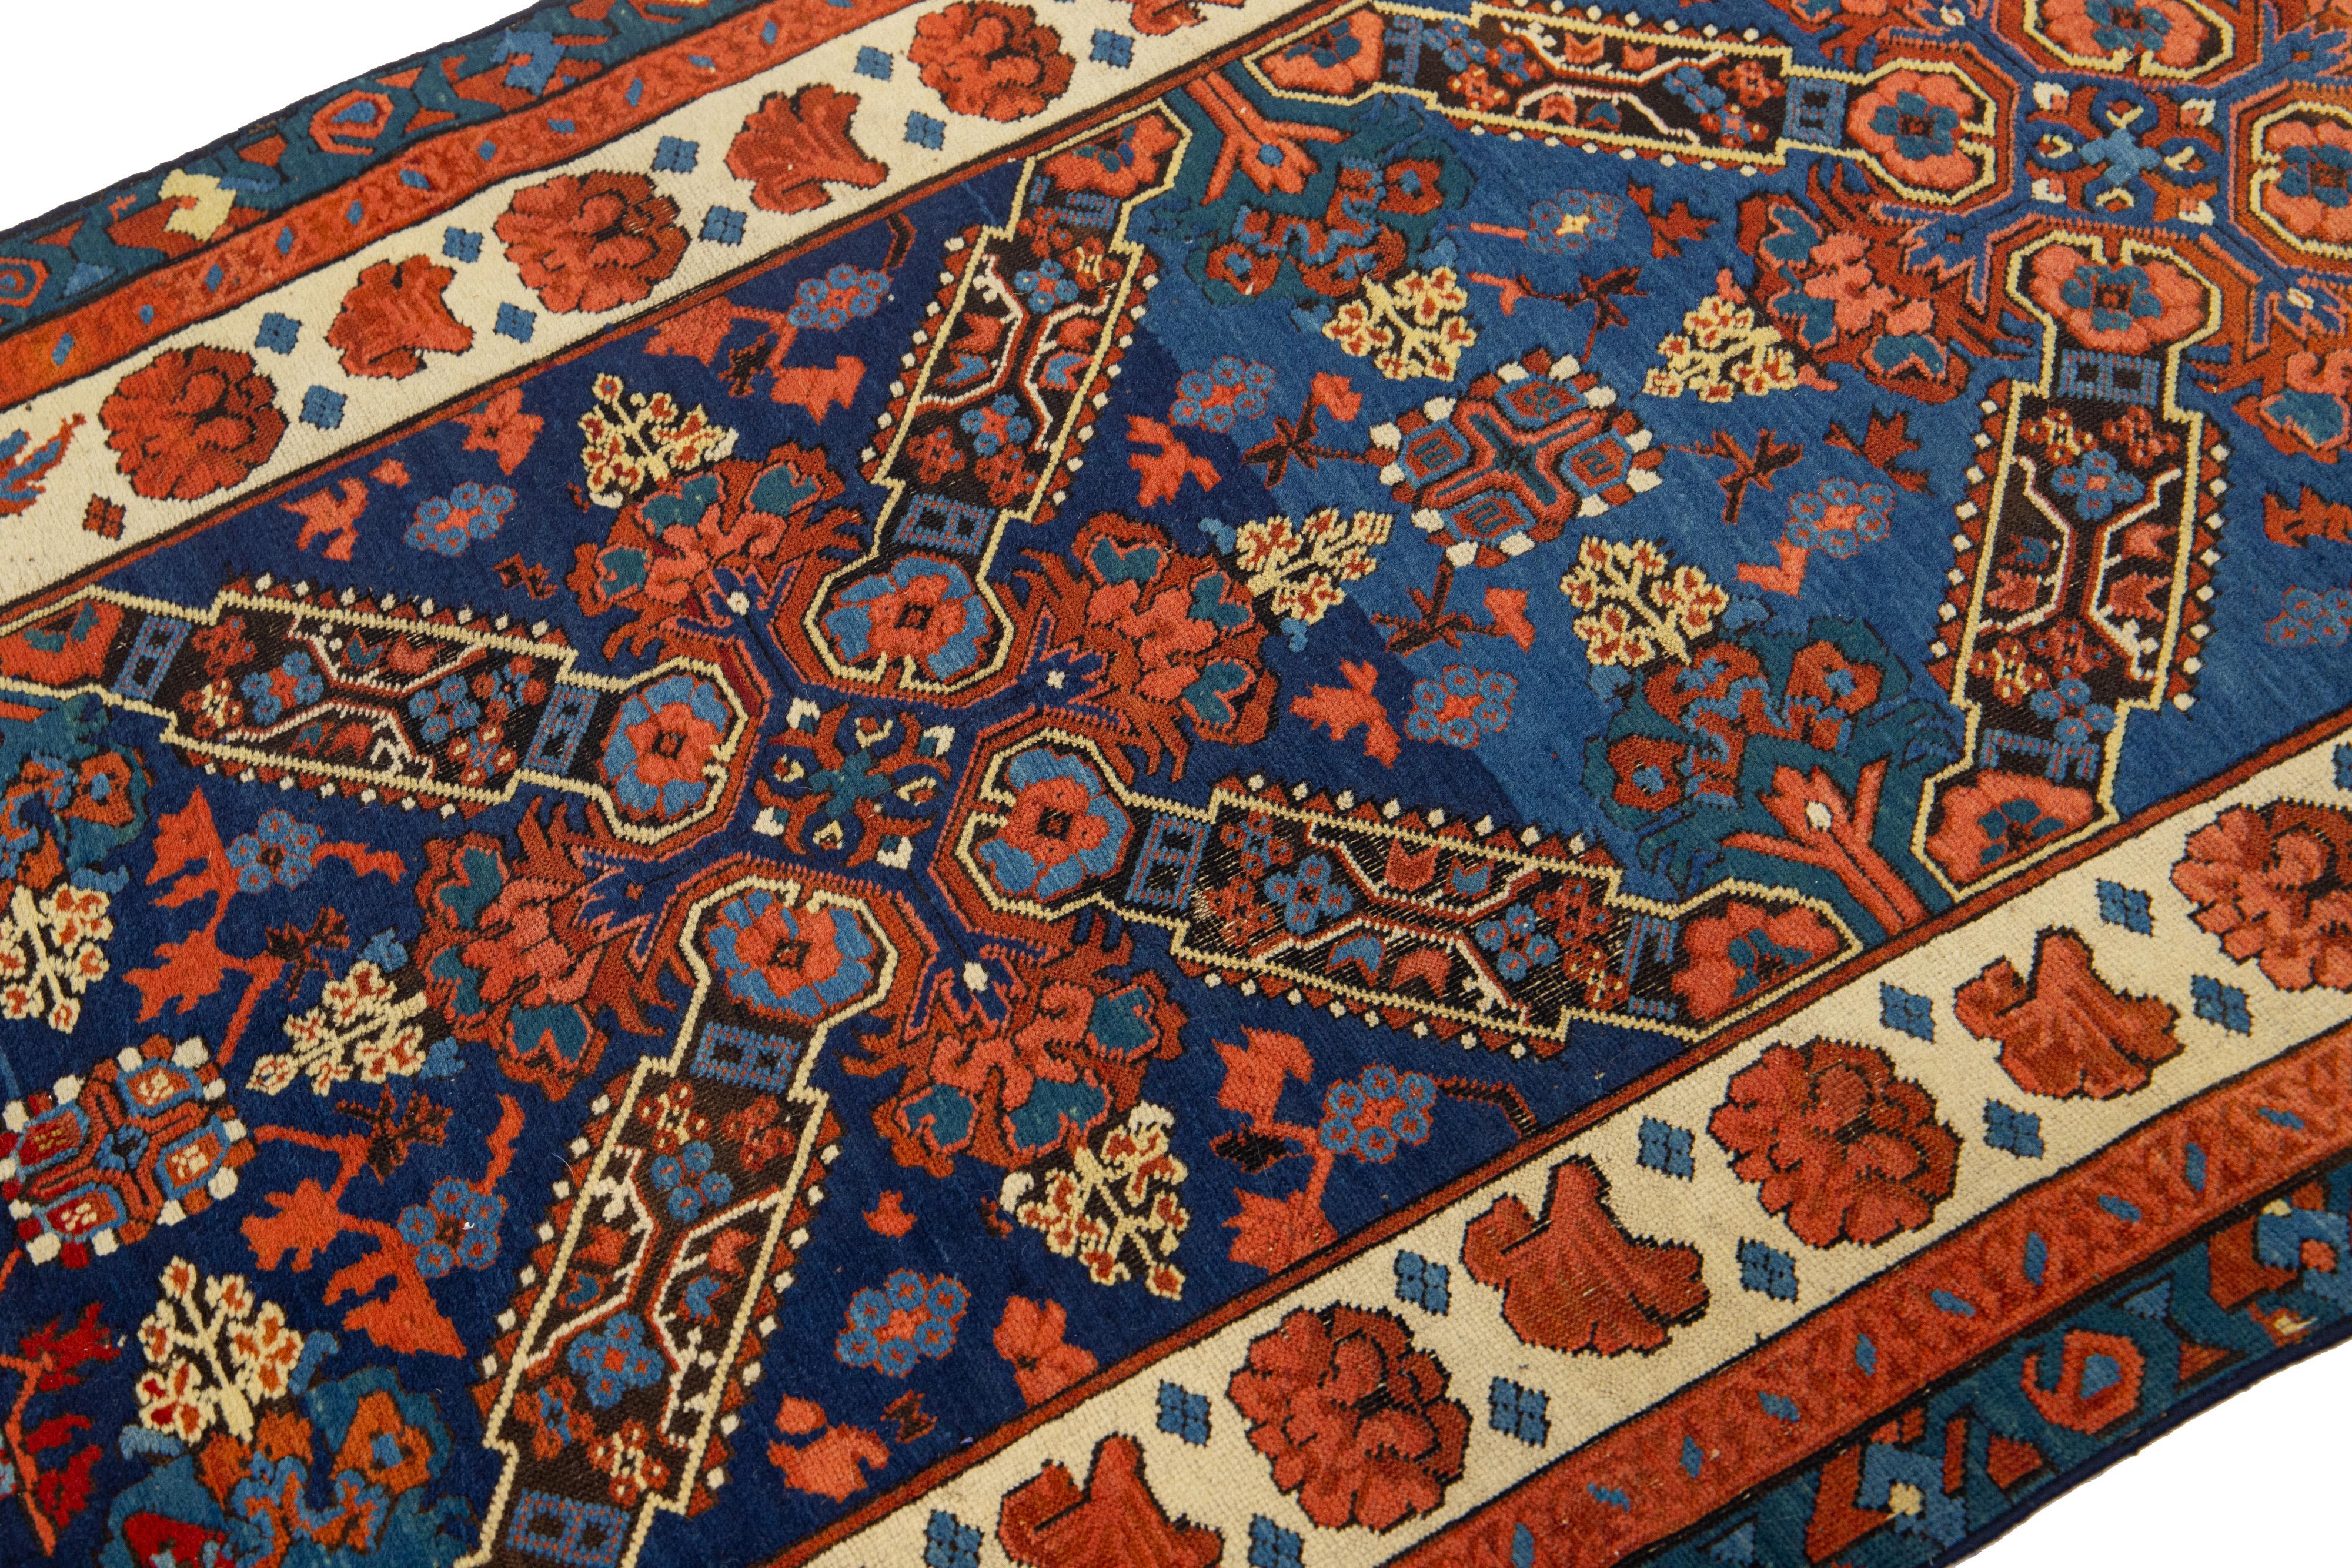 Dieser Wollteppich von Seychour wird in sorgfältiger Handarbeit hergestellt. Der Teppich ist in einem satten Marineblau gehalten, das mit zarten Verzierungen in verschiedenen Rot-, Grün-, Blau- und Beigetönen geschmückt ist und ein kompliziertes